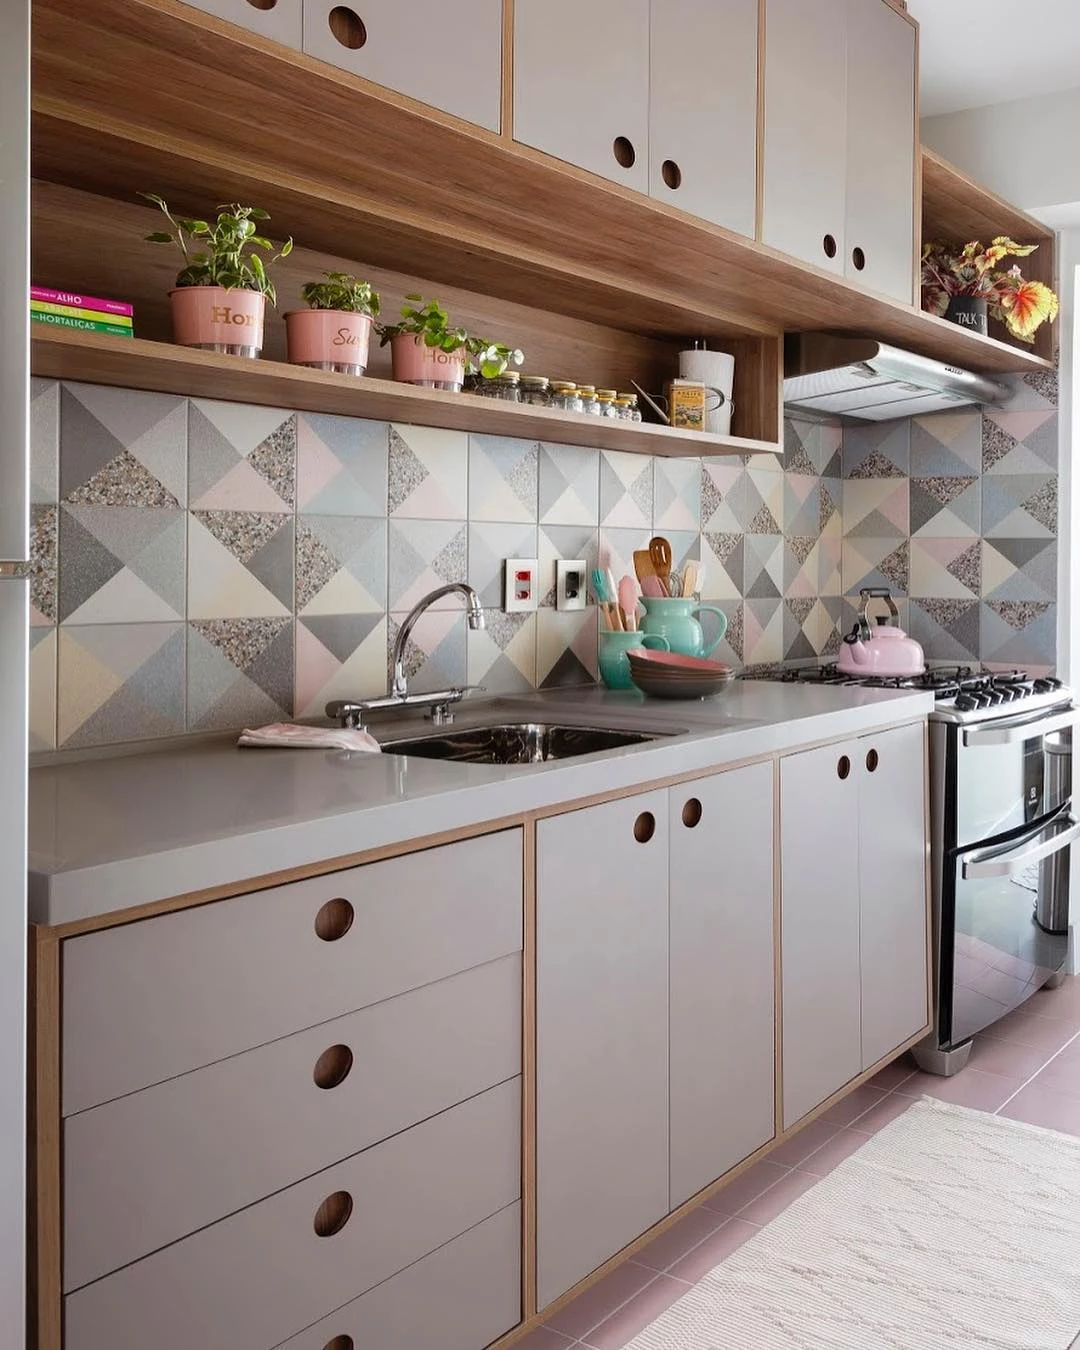 Azulejo português em destaque na cozinha